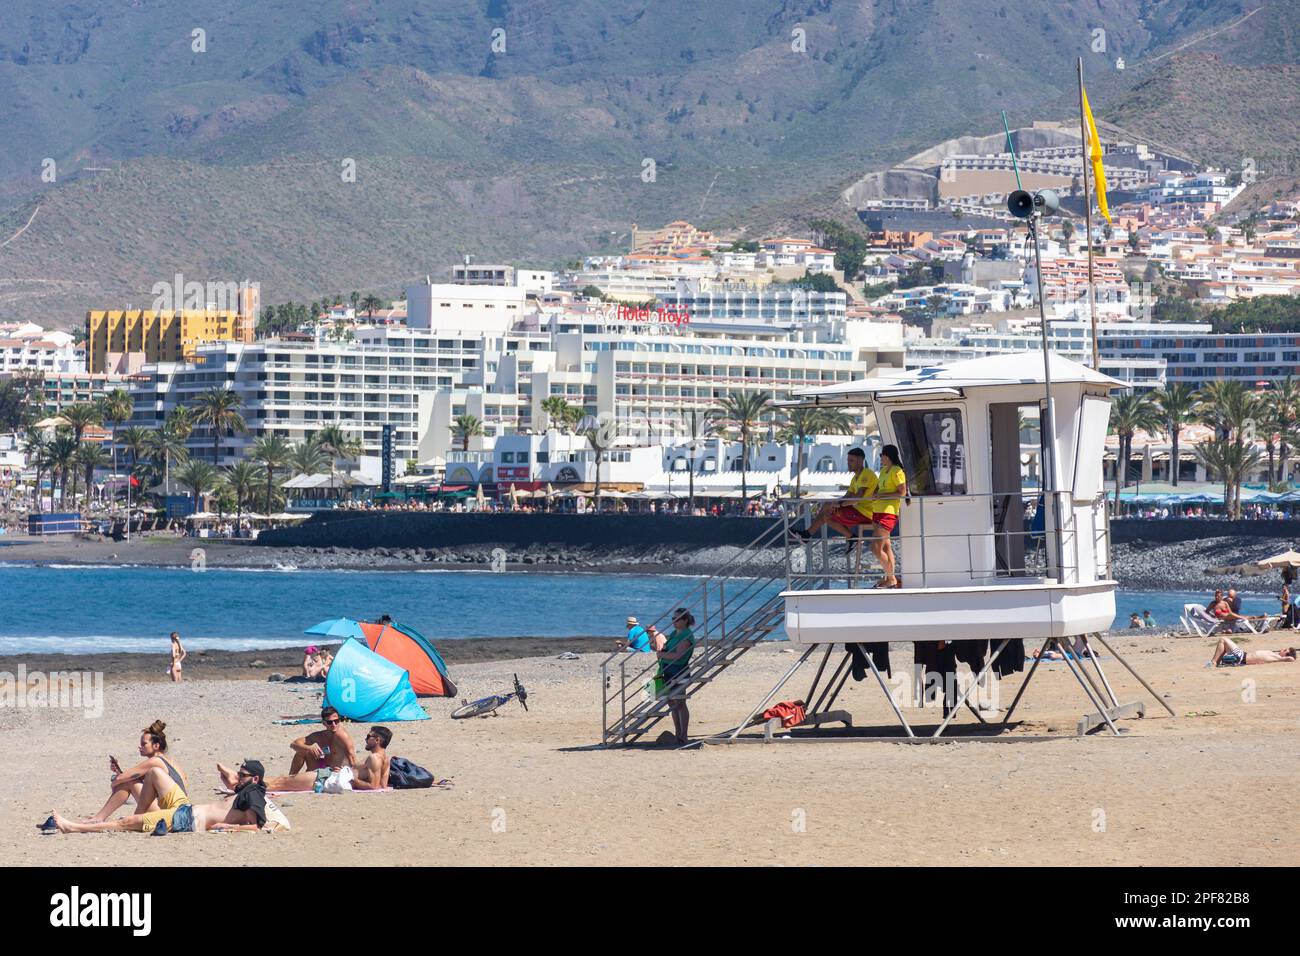 Vue sur la plage et la station balnéaire, Playa de las Américas, Tenerife, Iles Canaries, Royaume d'Espagne Banque D'Images